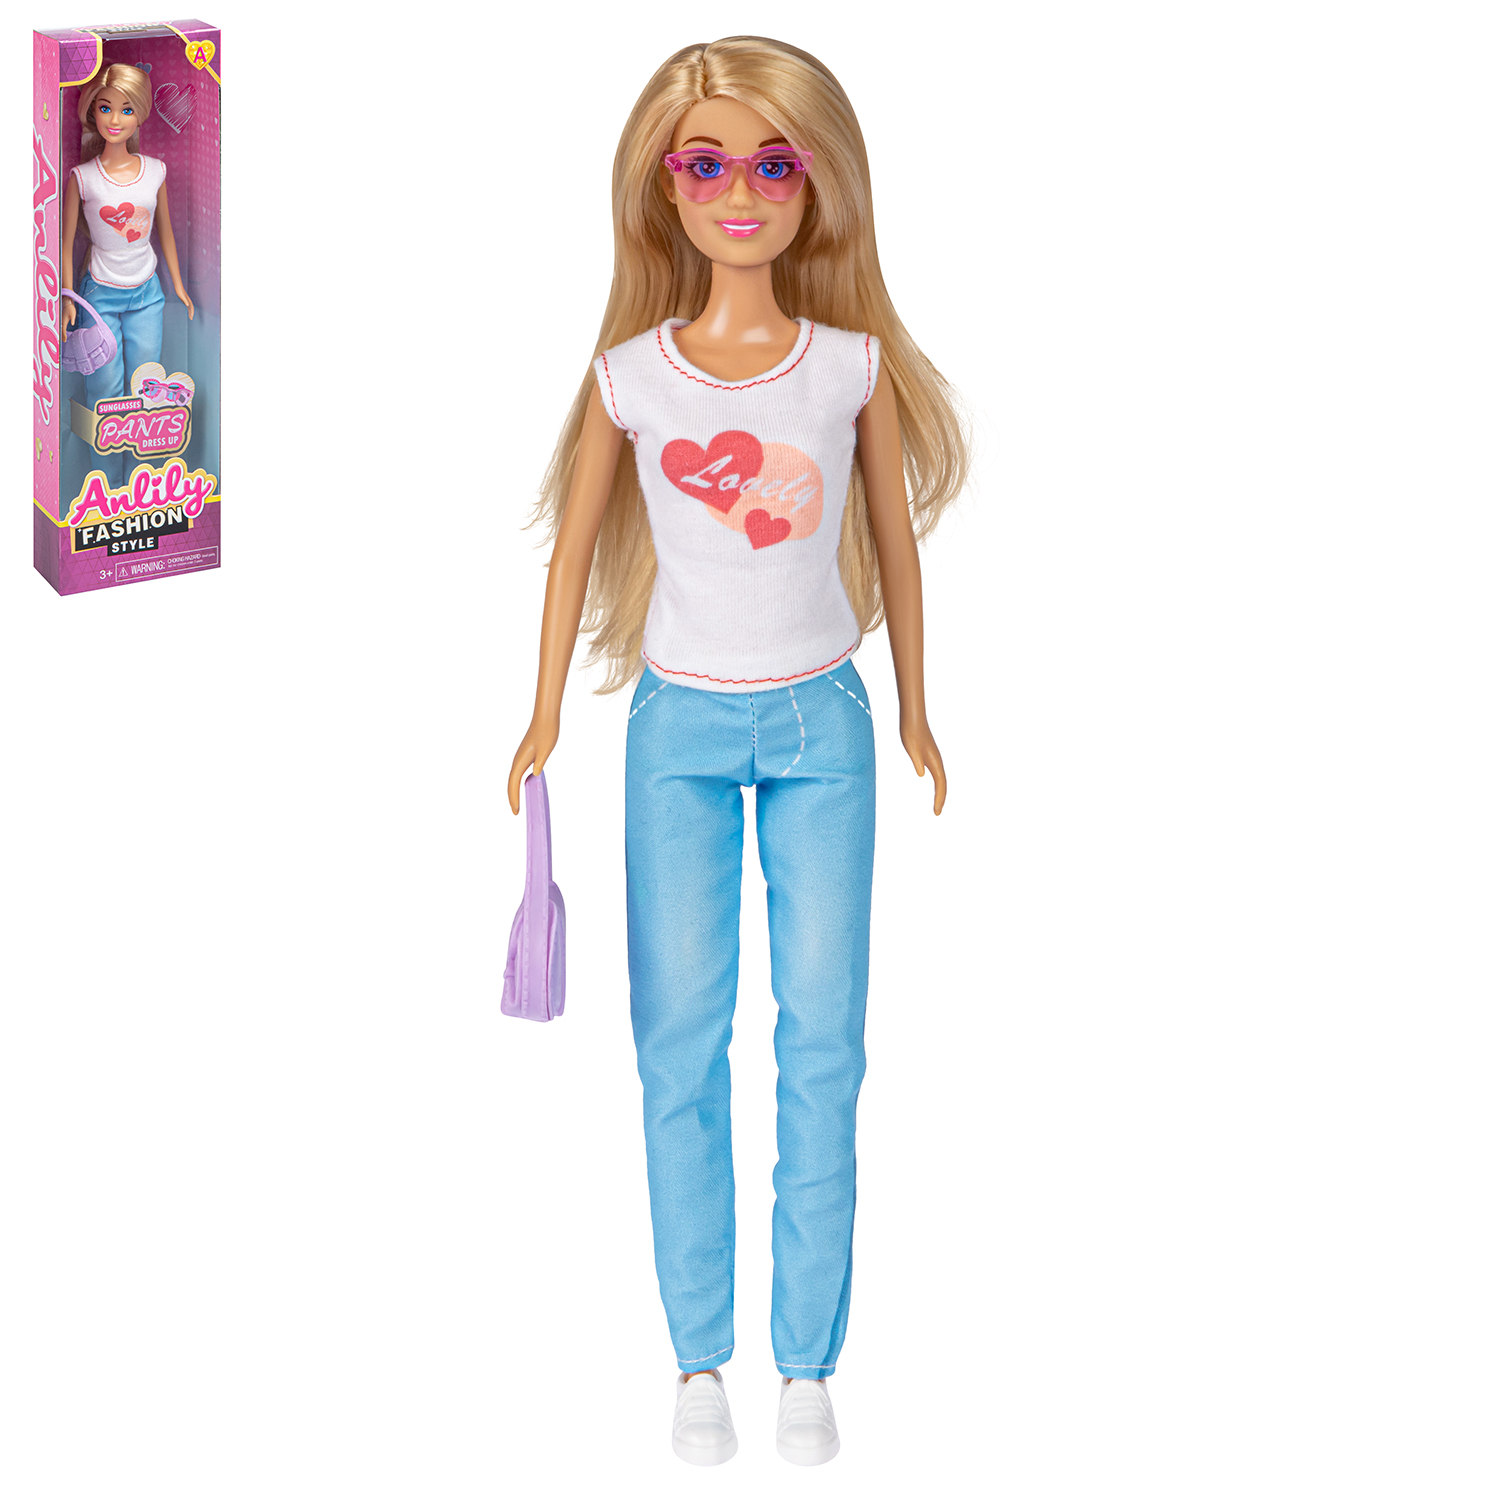 Модельная кукла Amore Bello Модница, 30 см, JB0211443